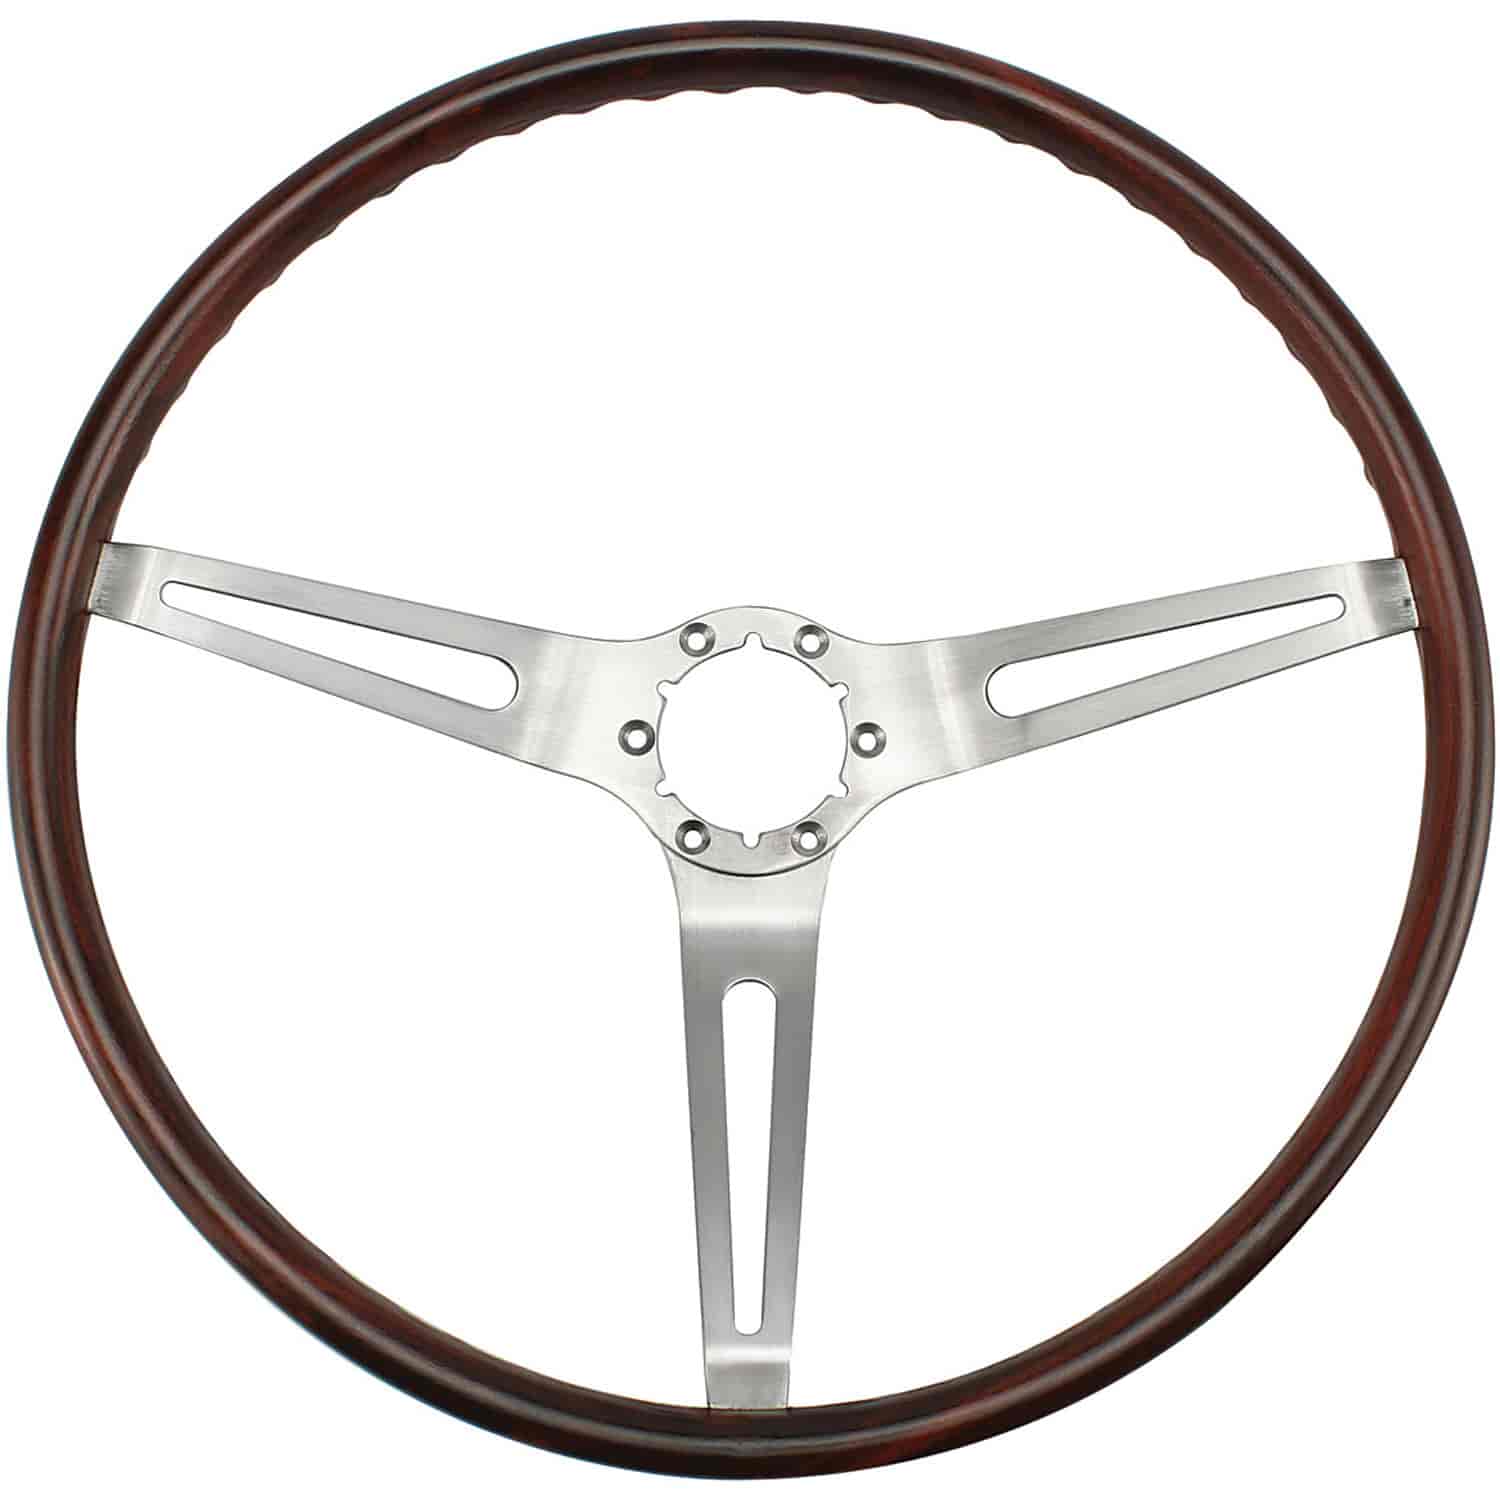 Steering Wheel 1969 Buick/Chevrolet Rosewood